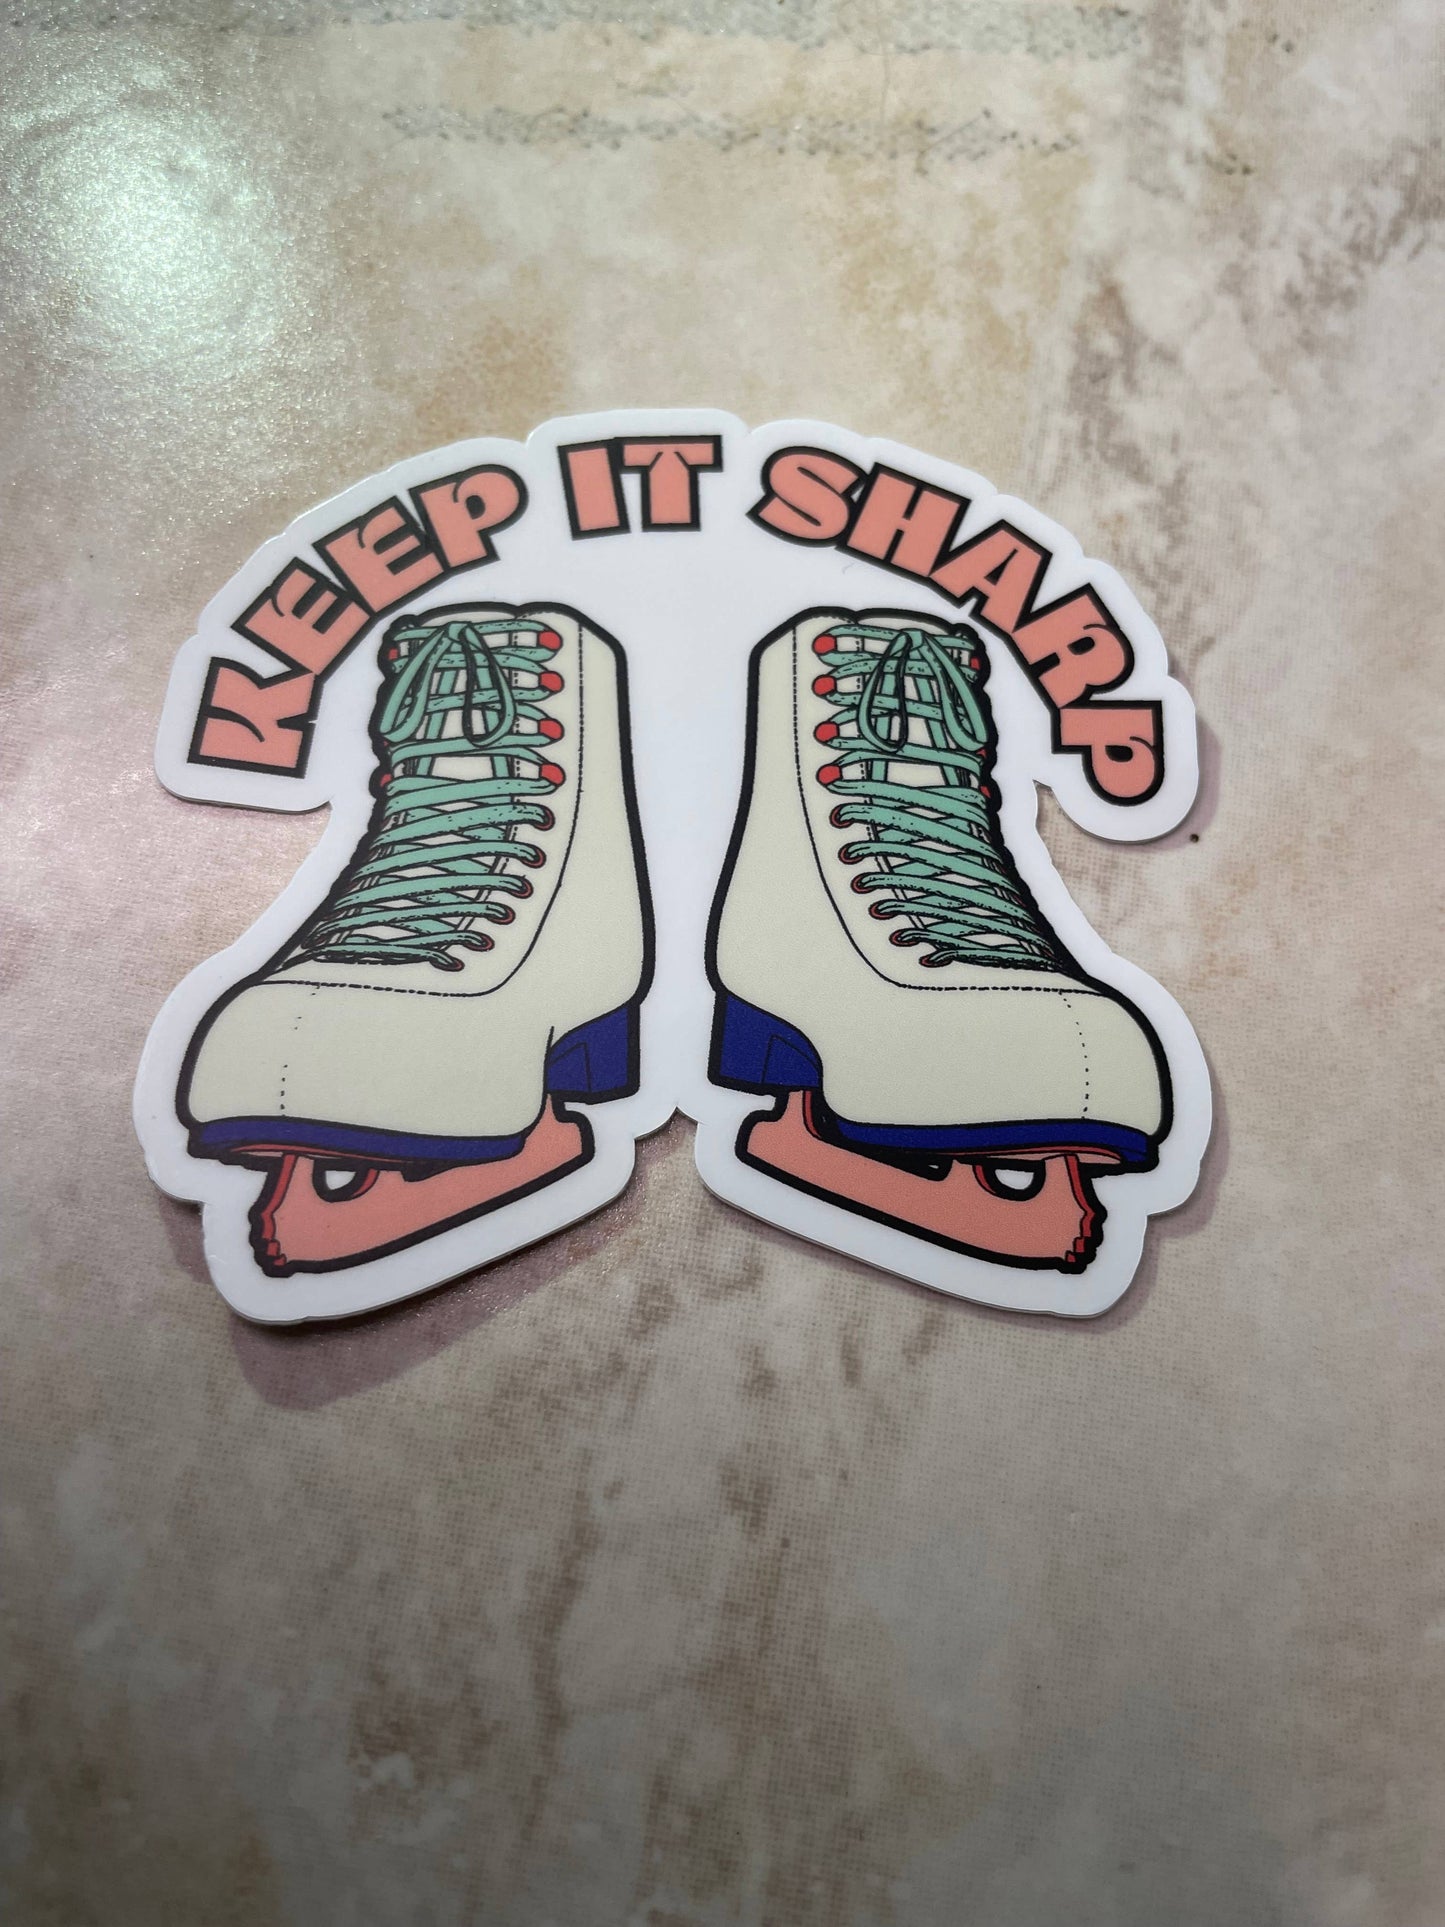 Keep It Sharp Figure Skating Sticker, 3" x 2..75"